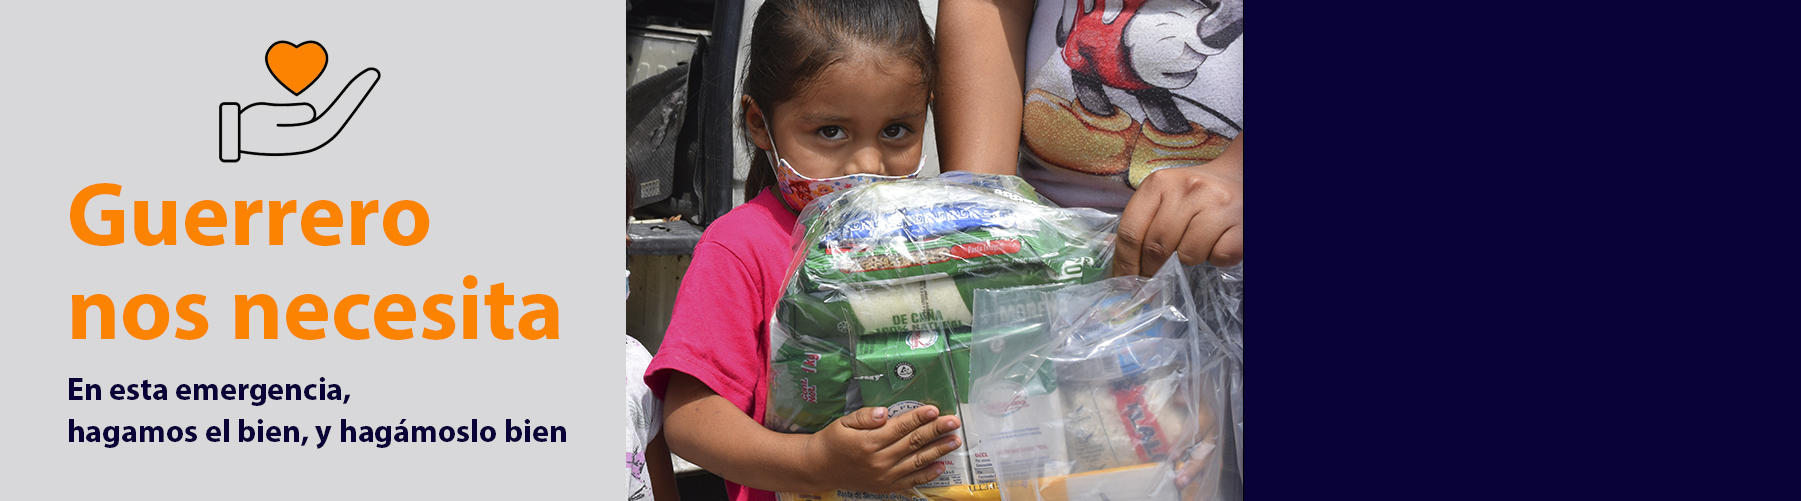 Conoce diversas formas de apoyar a la población afectada por el huracán Otis en Guerrero. #FuerzaMéxico #FuerzaGuerrero.